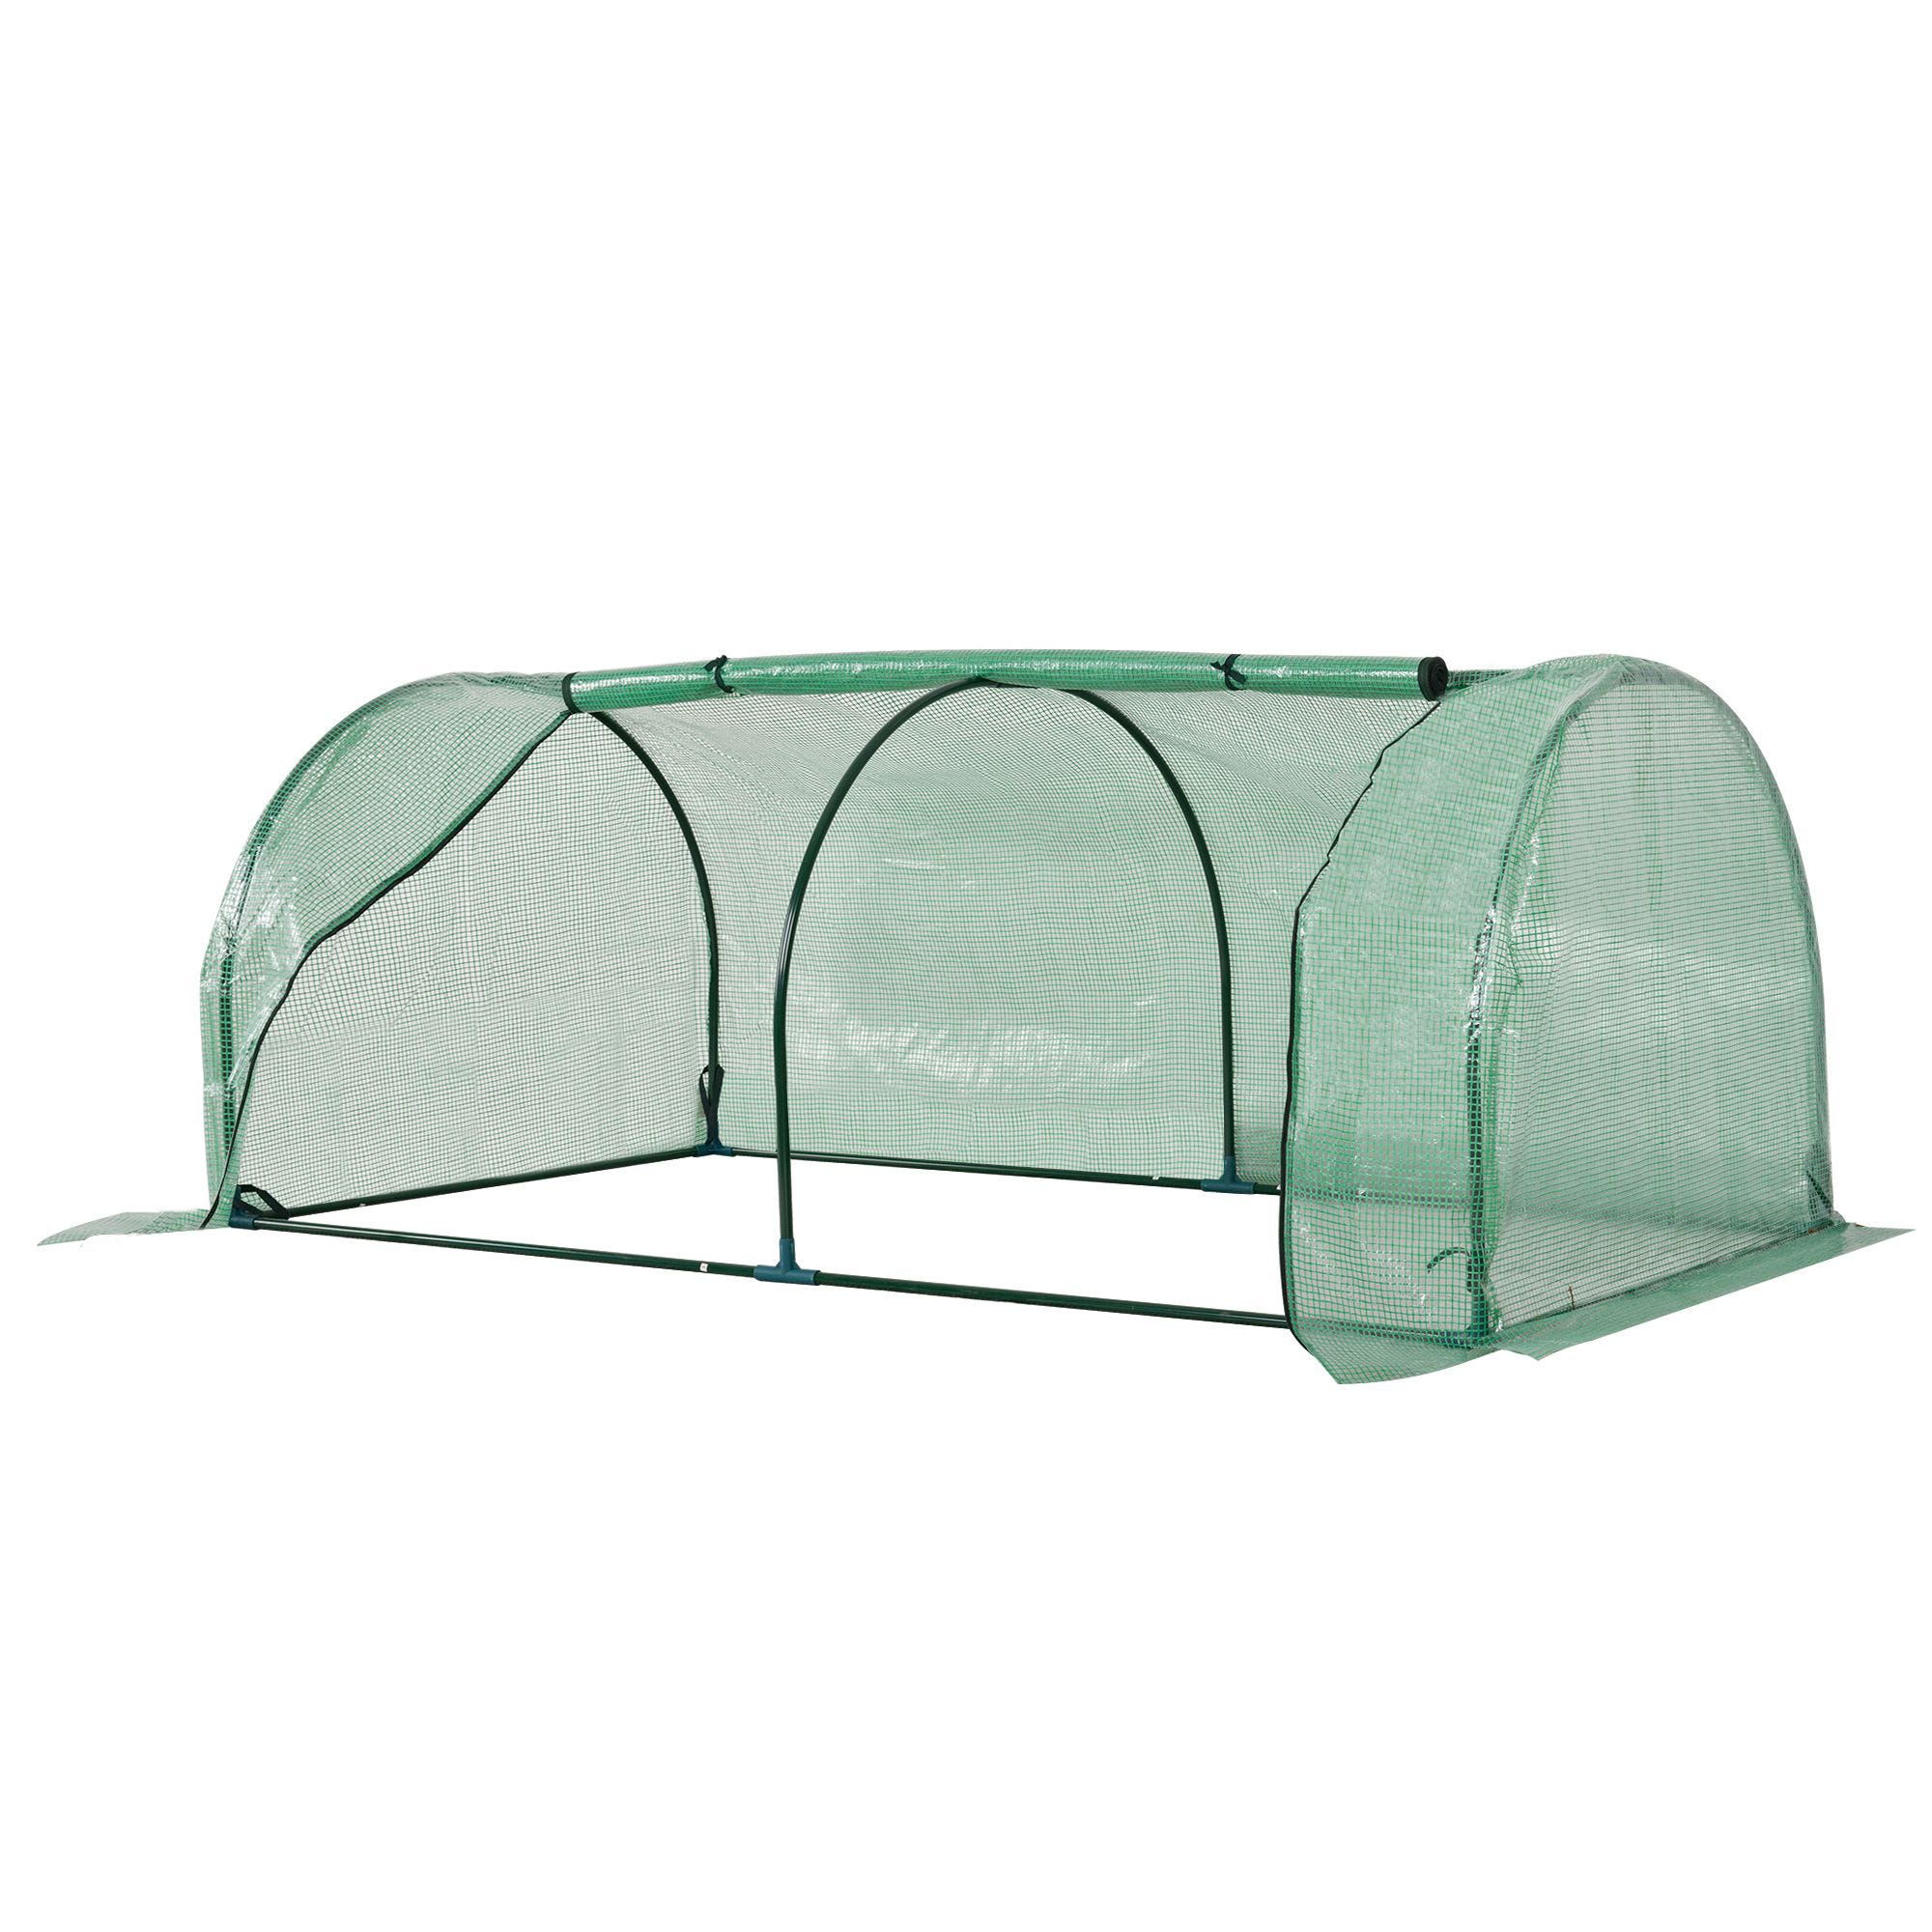 Mini invernadero de plantas para interior y exterior, cubierta de